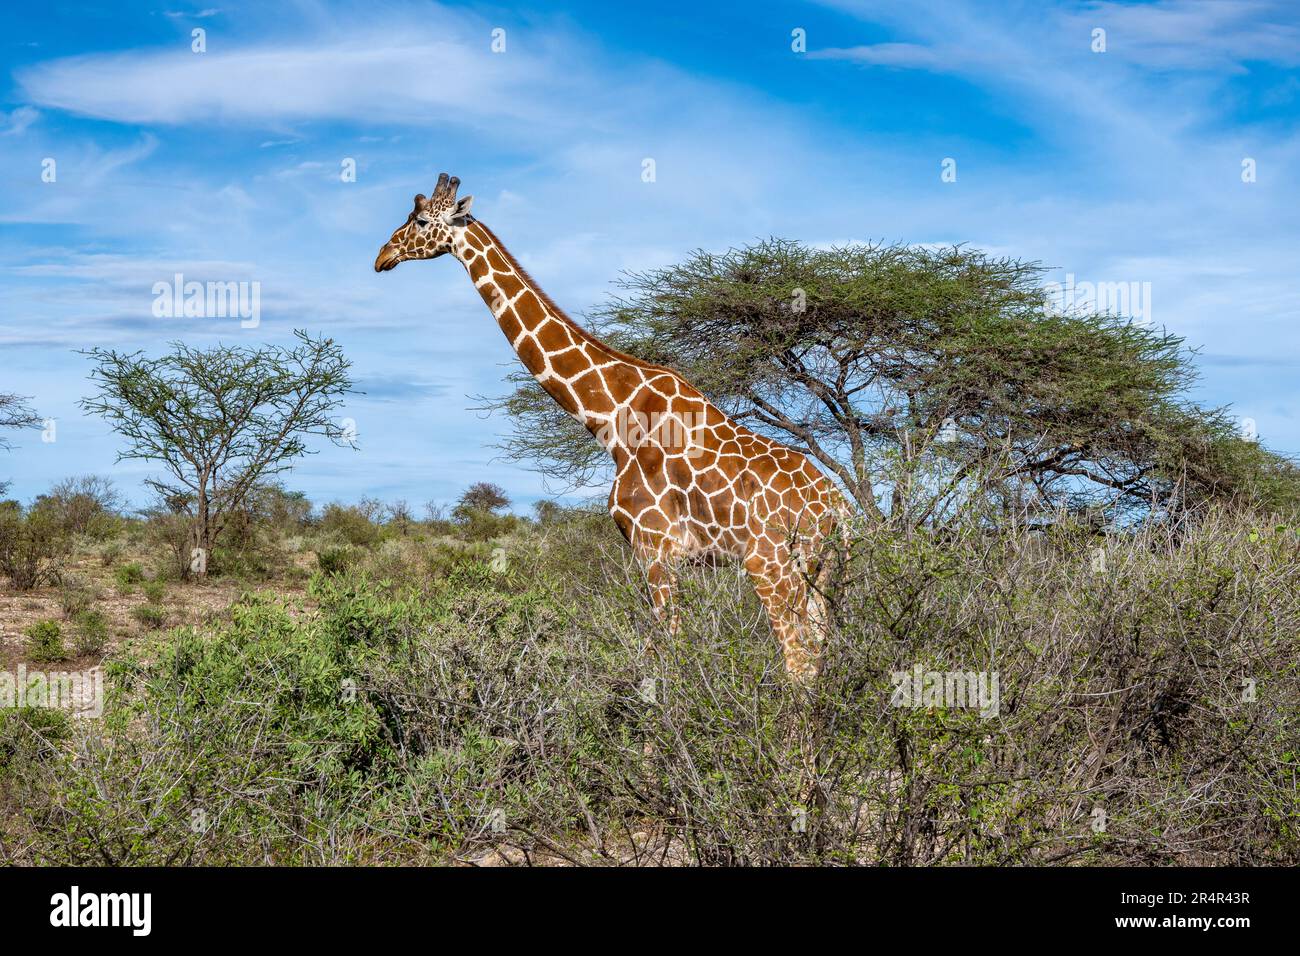 Eine vom Aussterben bedrohte retikulierte Giraffe (Giraffa reticulata), die in der offenen Savanne weidet. Kenia, Afrika. Stockfoto